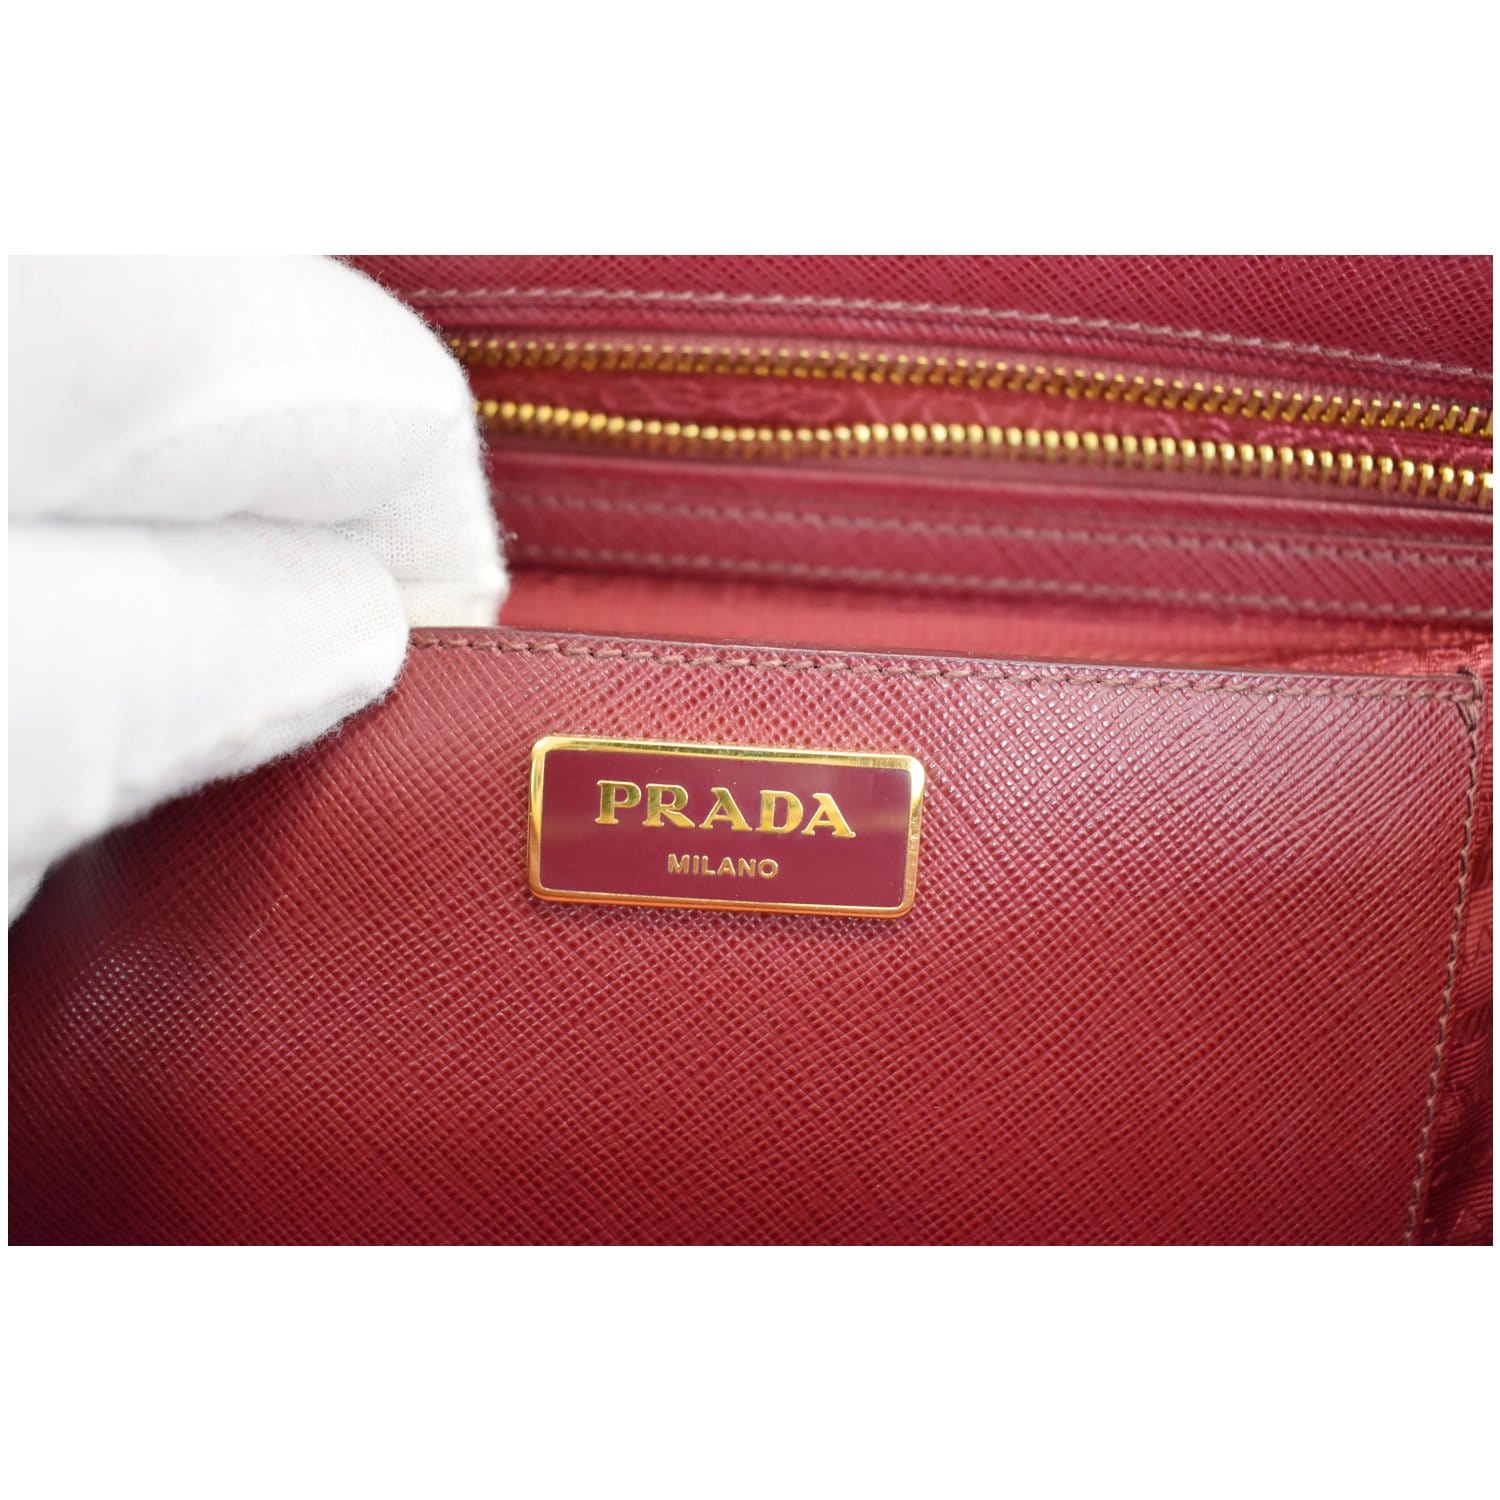 Red Saffiano Leather Shoulder Bag